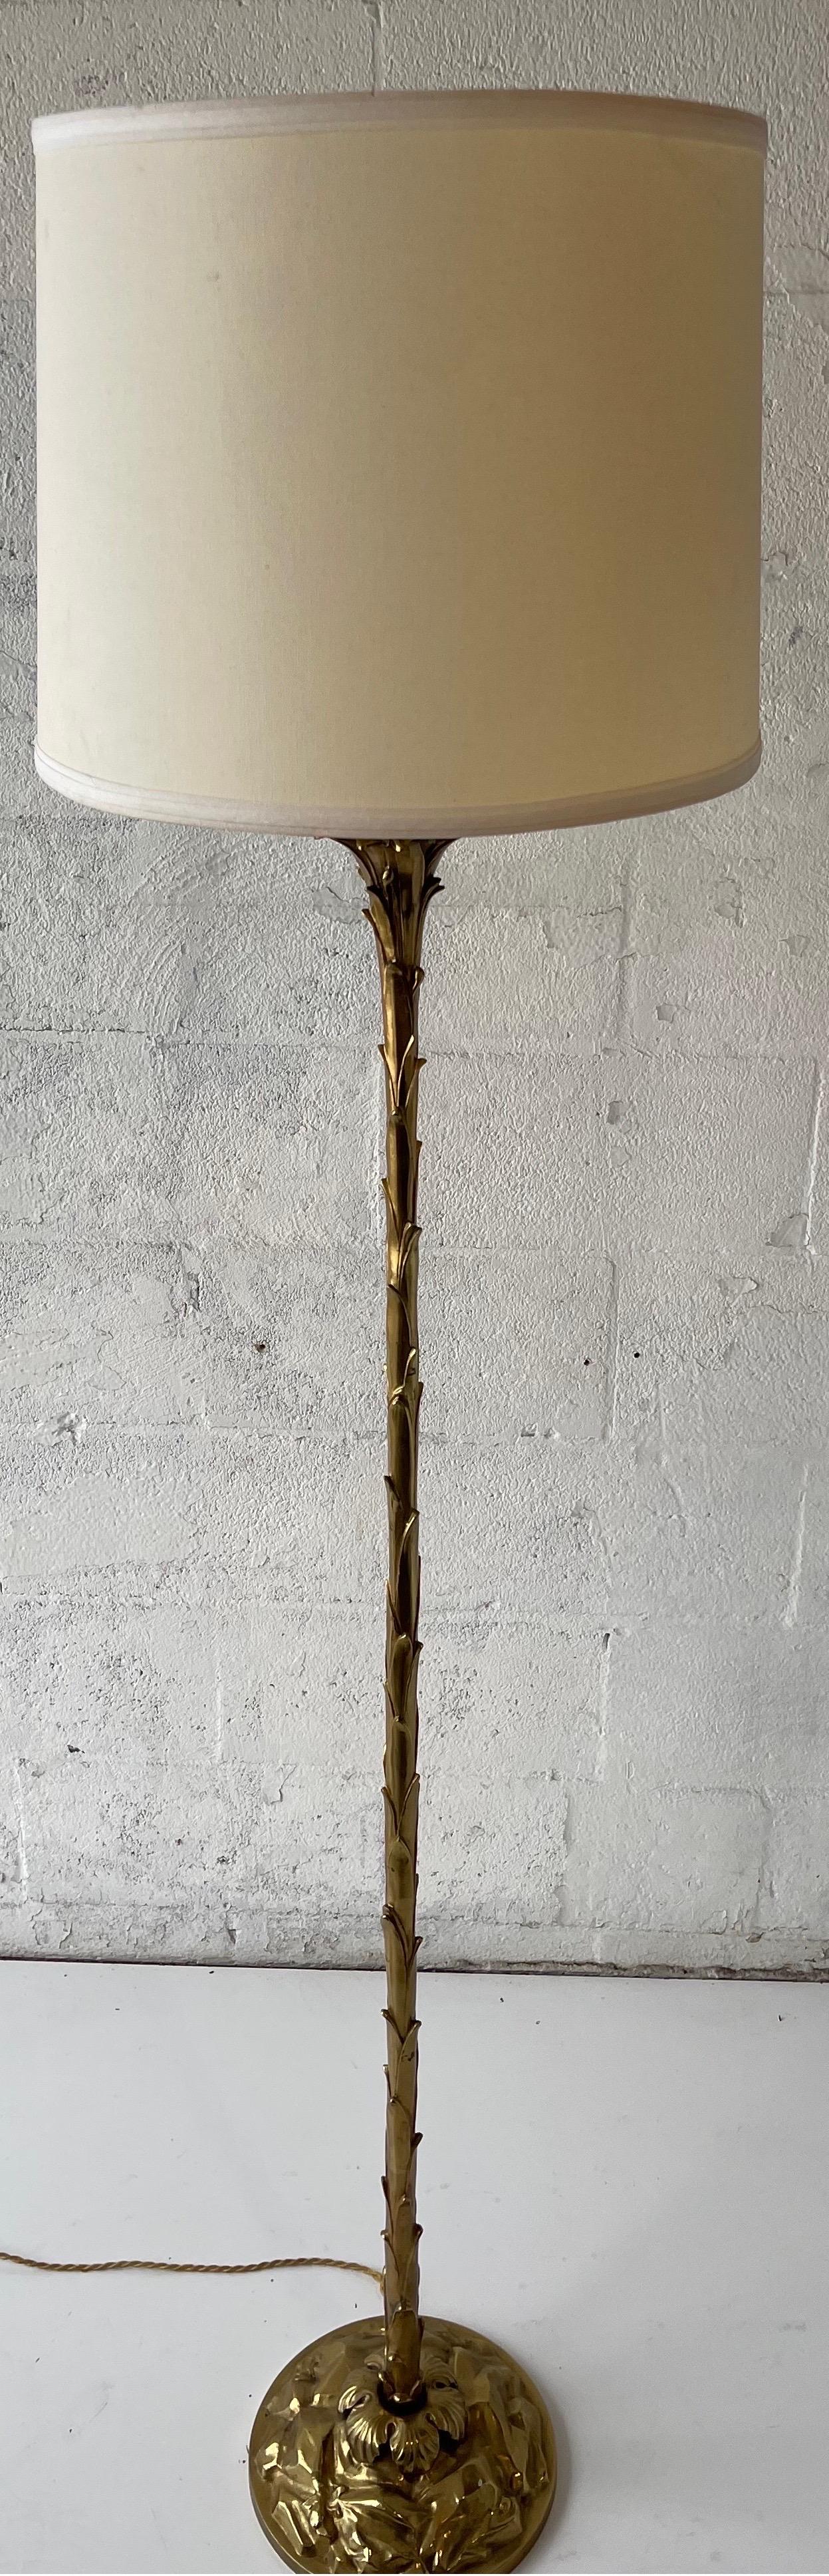 Superbe lampadaire en bronze de la Maison Bagués
France , Circa 1950.
Wire For US use . 
Une prise, ampoule de 100 watts maximum ou LED de 13 watts.
Dimensions de l'abat-jour : 14/12/16